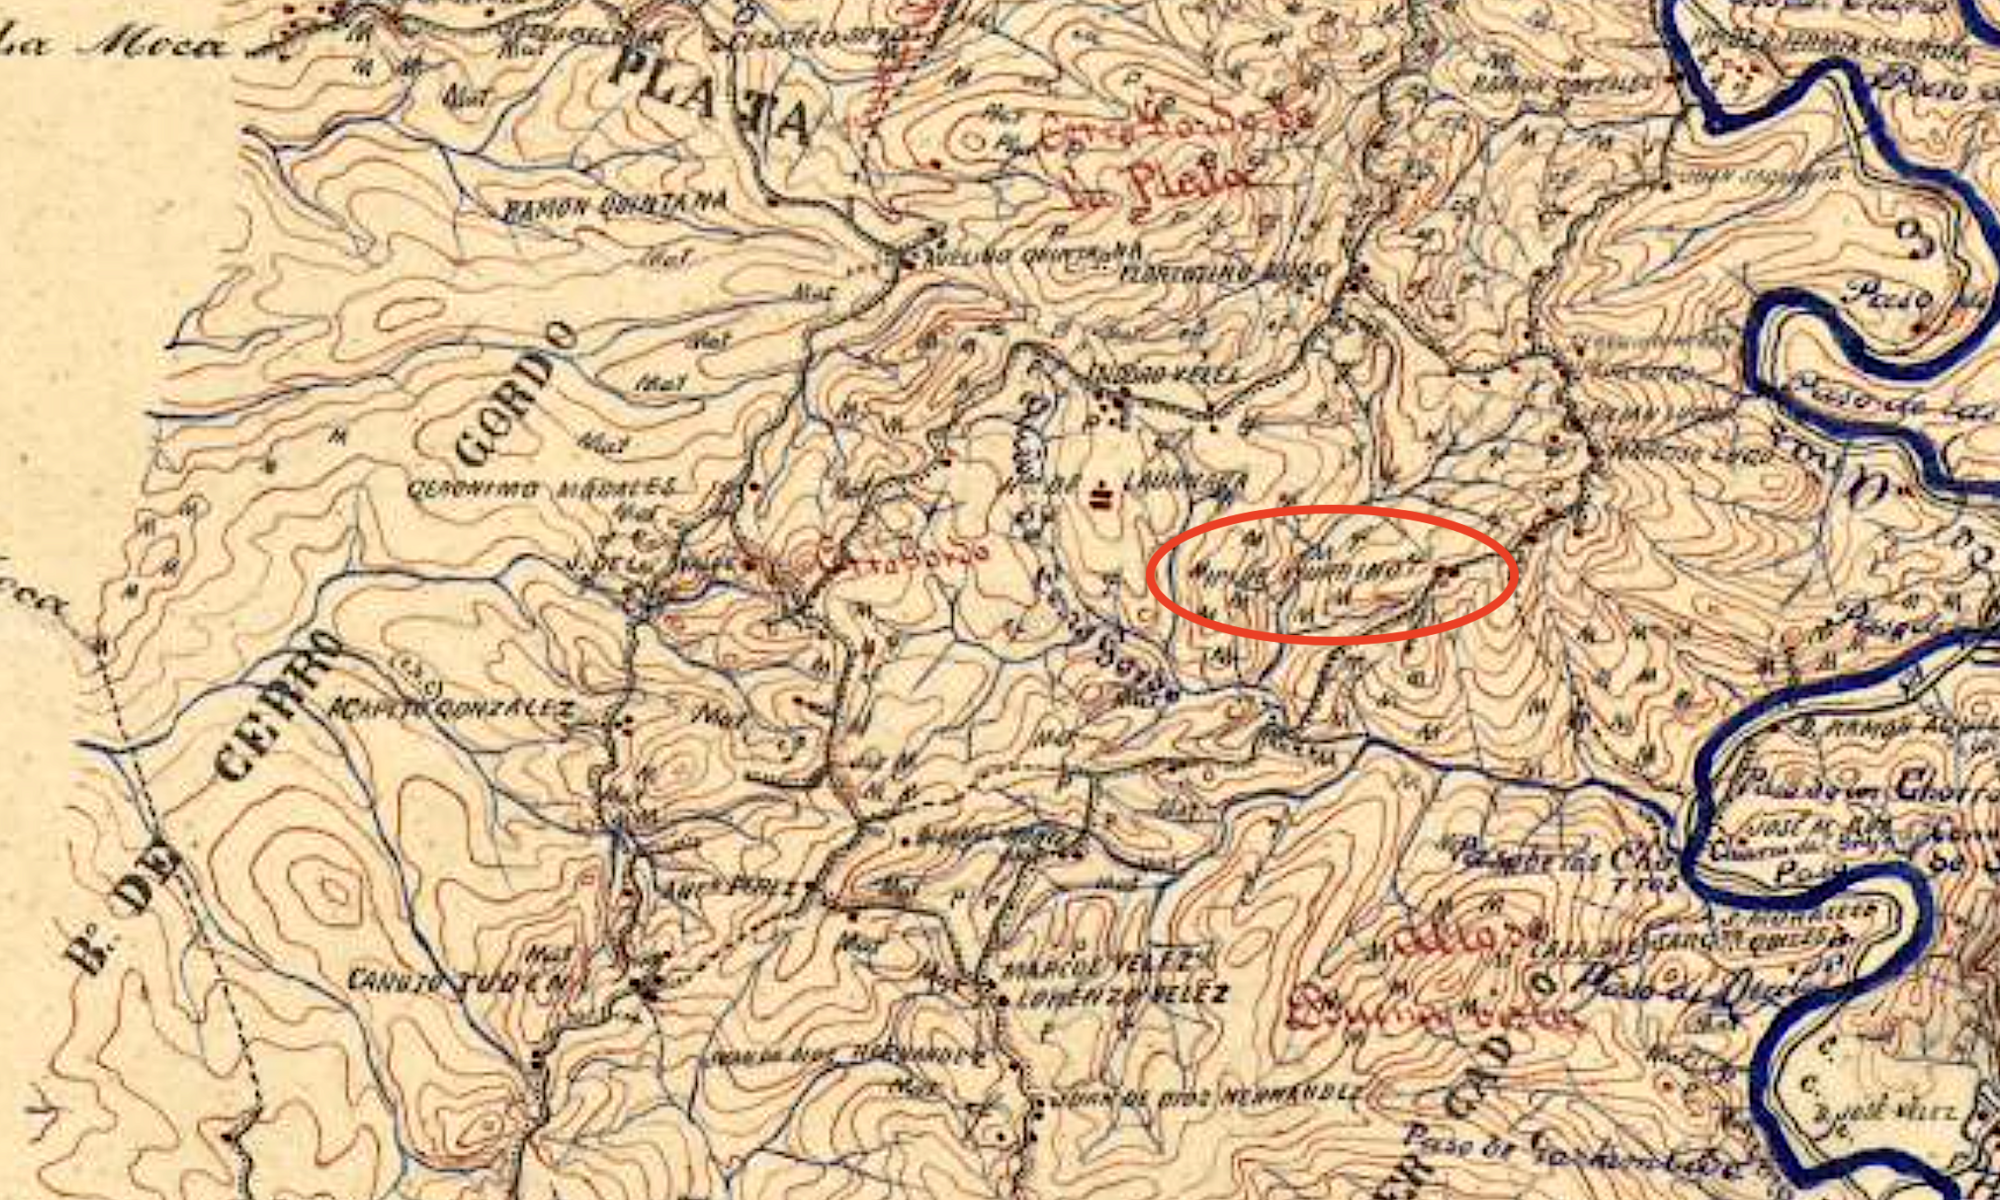 1893 Map of Cerro Gordo, Anasco